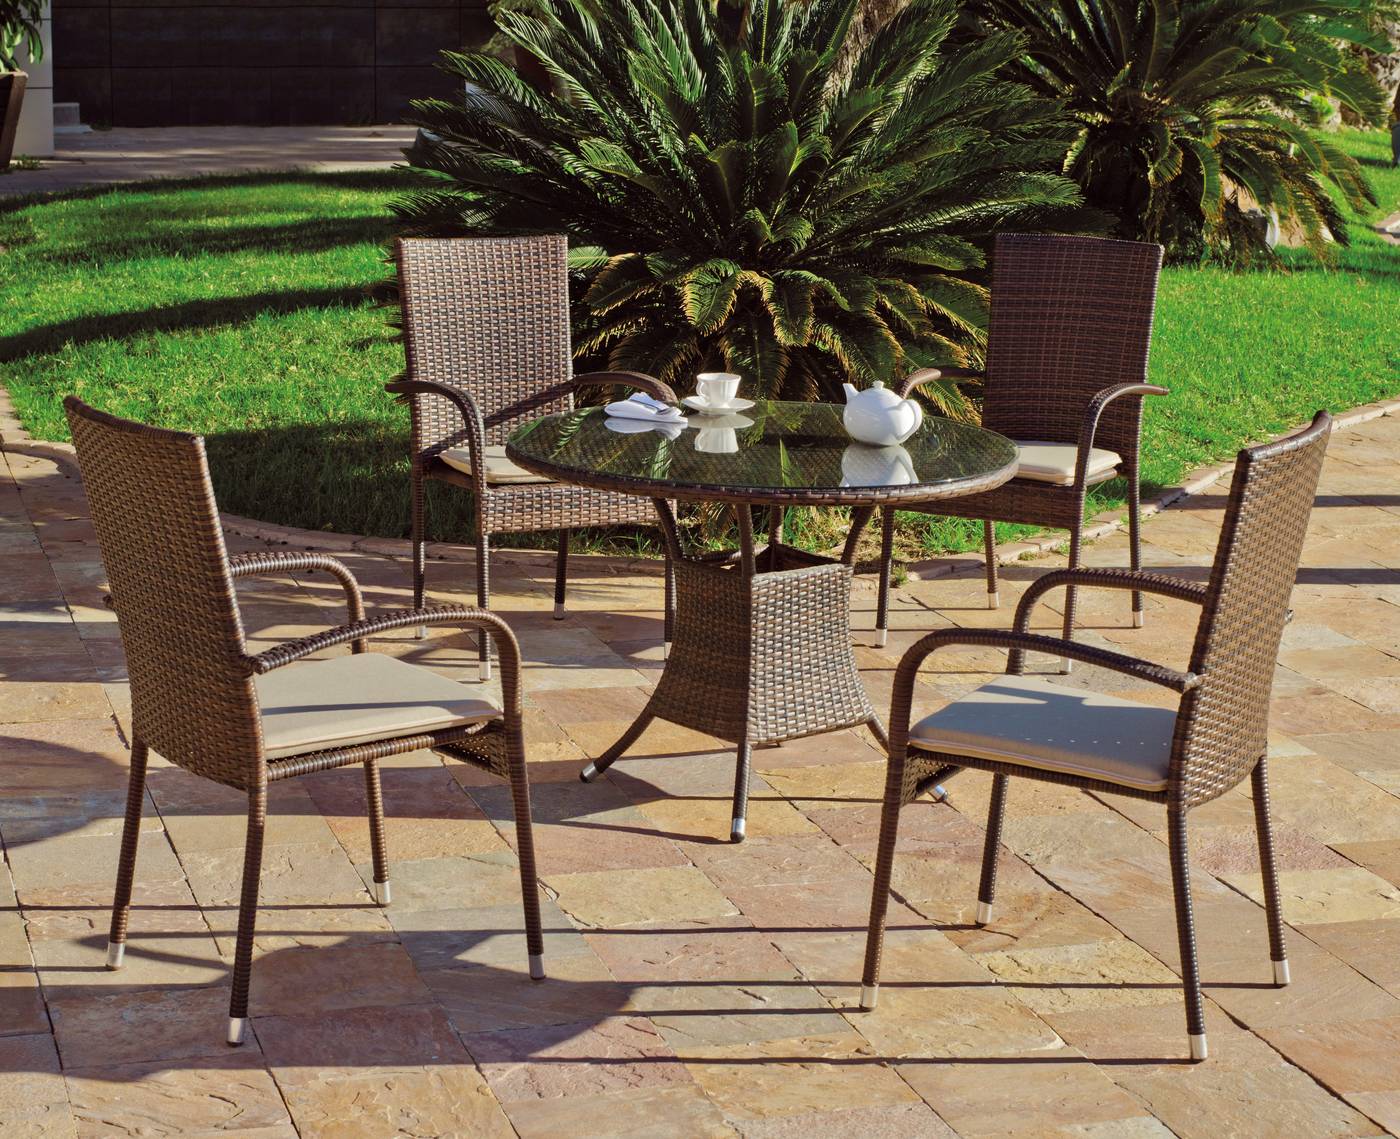 Conjunto Ratán Sint. Ber-90 - Conjunto de ratán sintético color marrón: mesa redonda de 90 cm. y 4 sillones con cojín